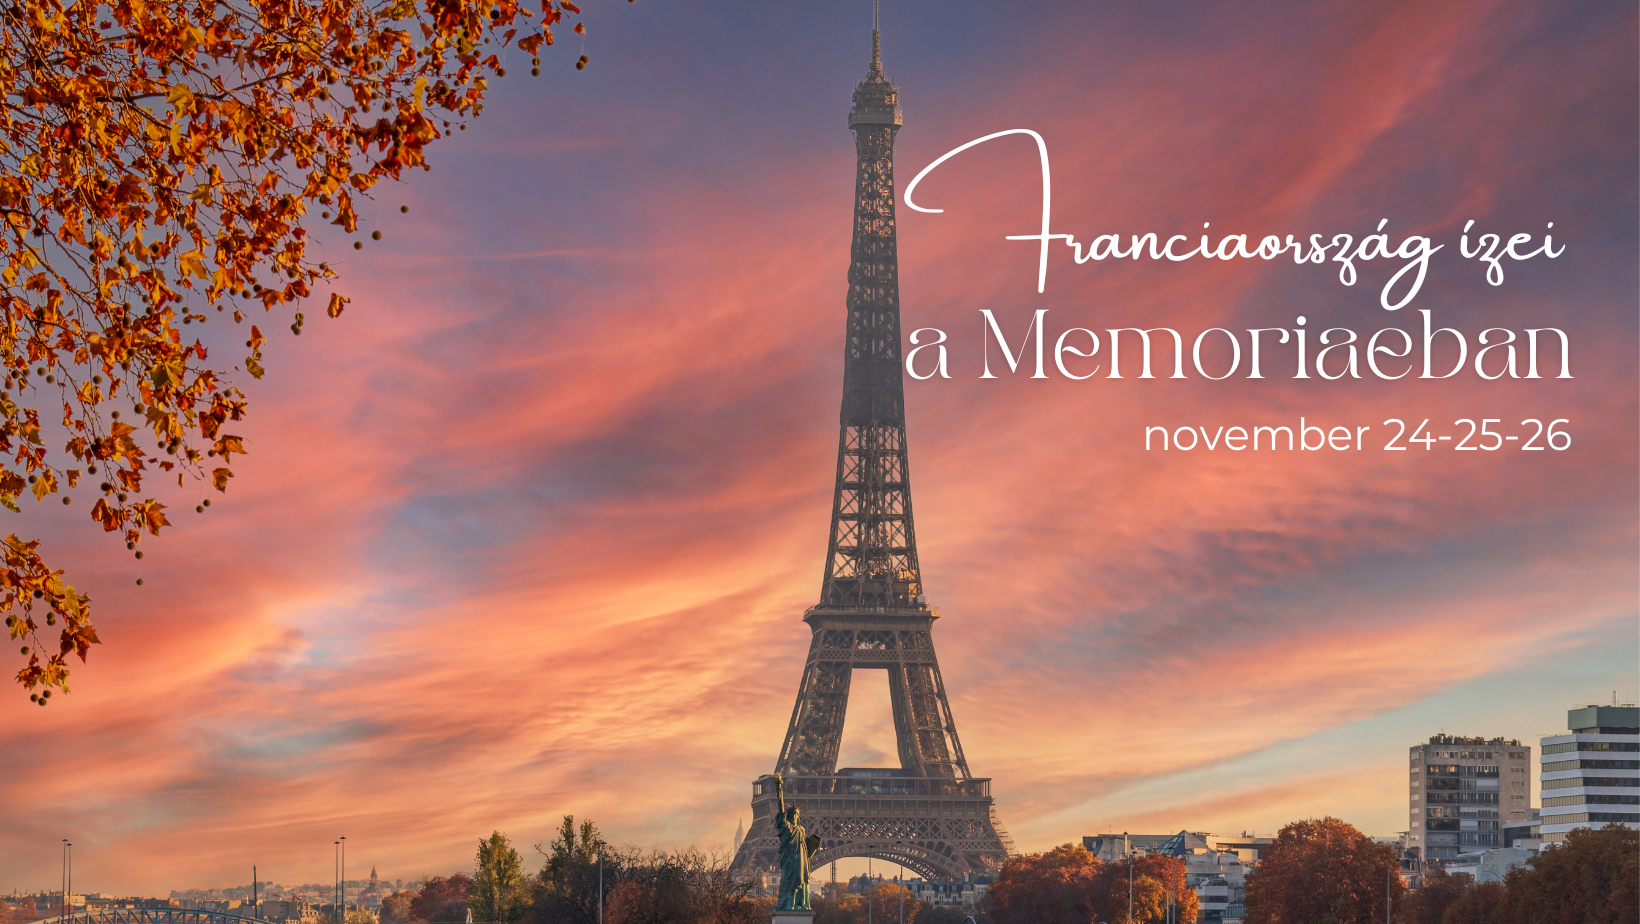 Franciaország ízei a Memoriae étteremben, Kaposváron